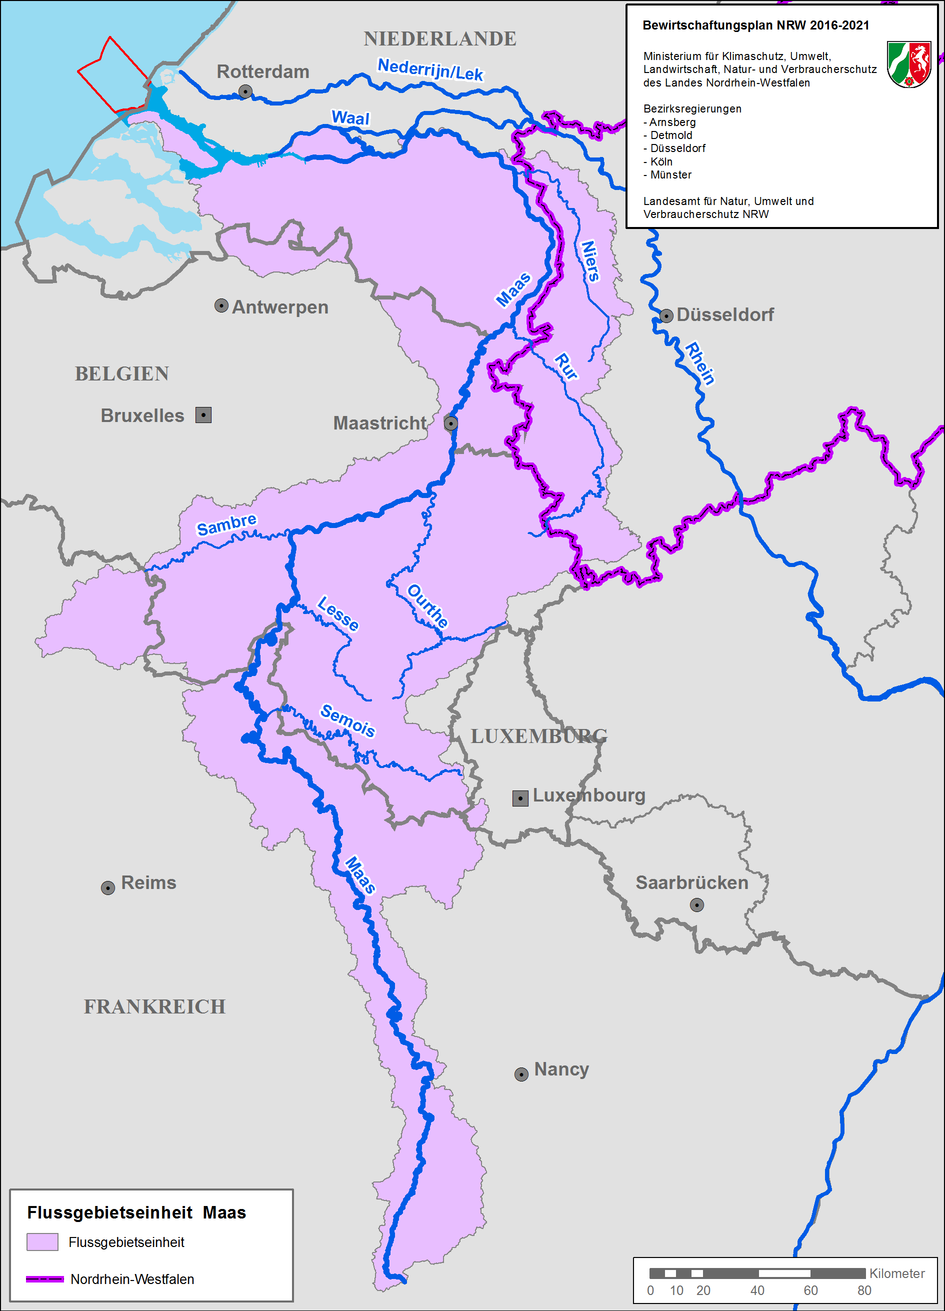 Eine Karte zeigt die FGE Maas von der niederländischen Nordseeküste über Deutschland und Belgien bis zur zur Quelle in Frankreich. Die FGE ist nicht in Bearbeitungsgebiete unterteilt.